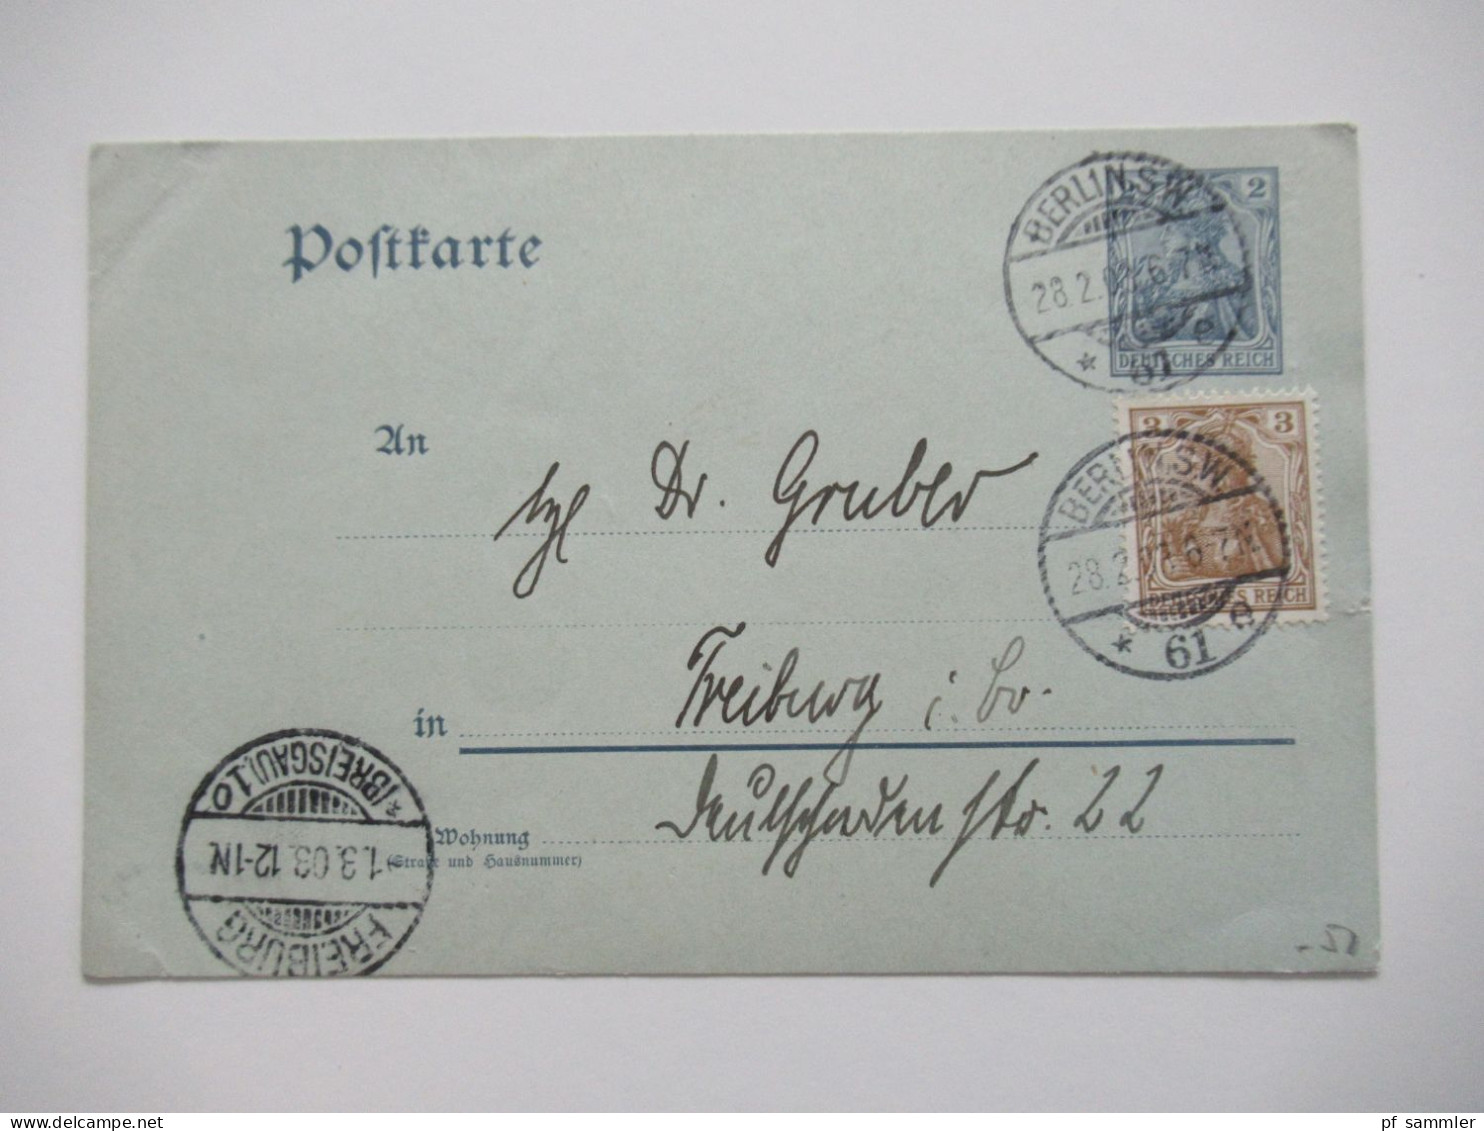 Berlin Postämter Ganzsachen Posten mit Rohrpost!! Ab 1875 - ca. 1910 insgesamt 110 Stück!! Interessanter Stöberposten!